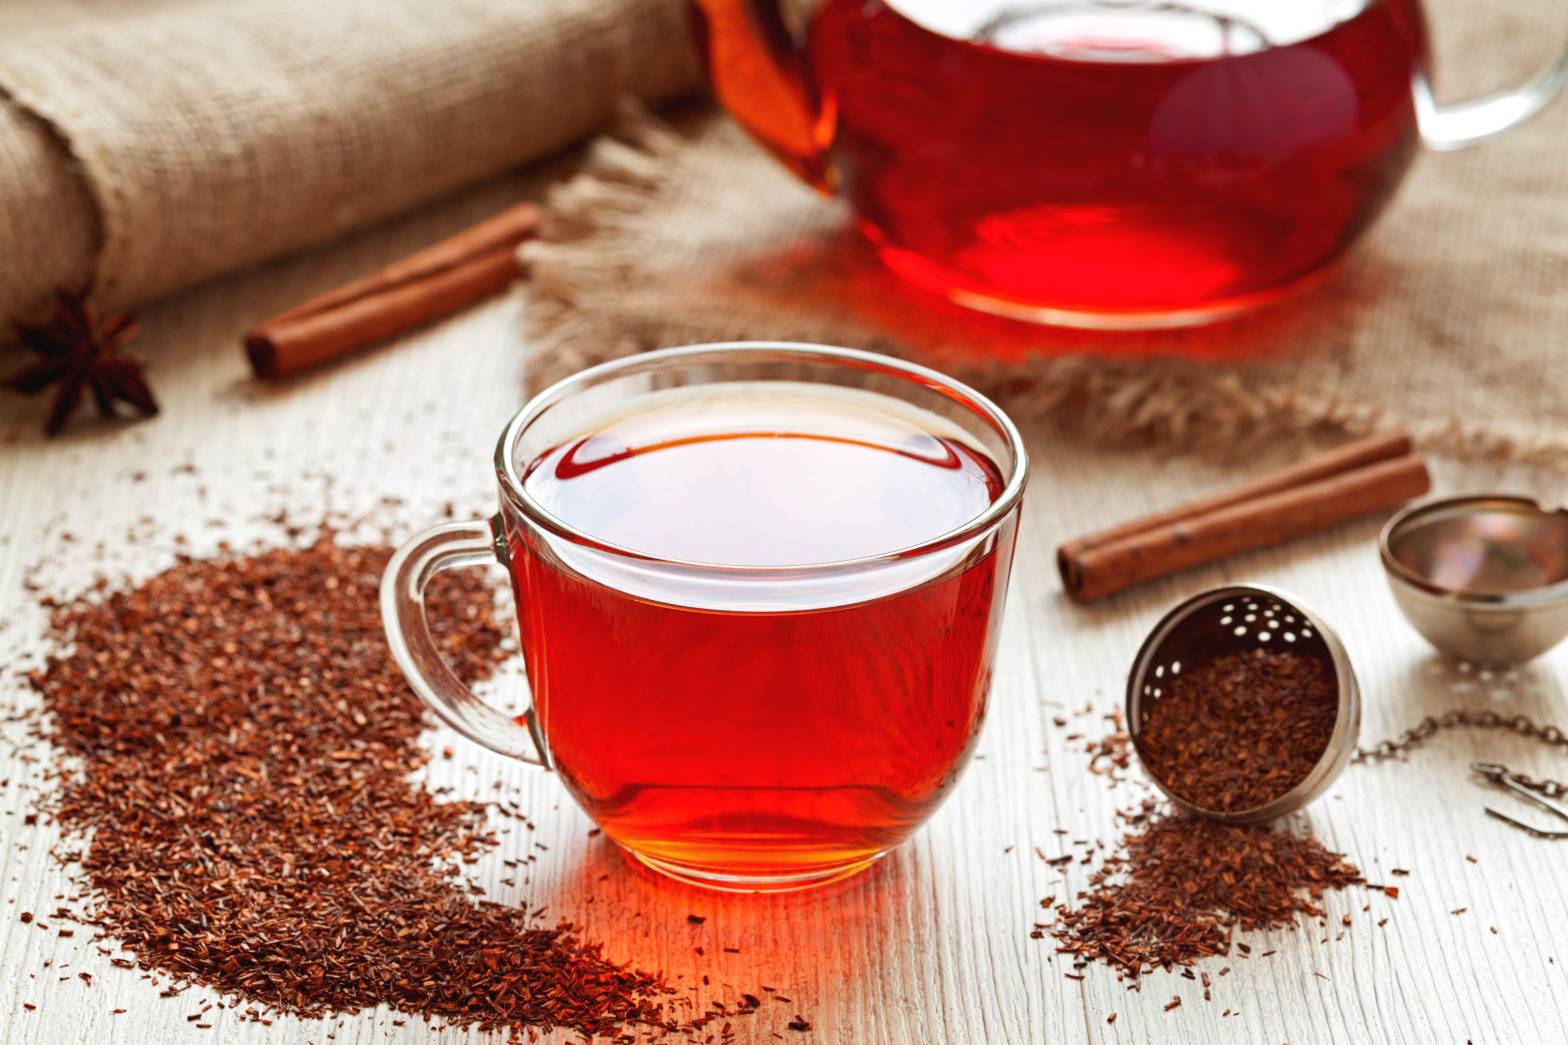 Organic Leaf Tea - Naja Tea